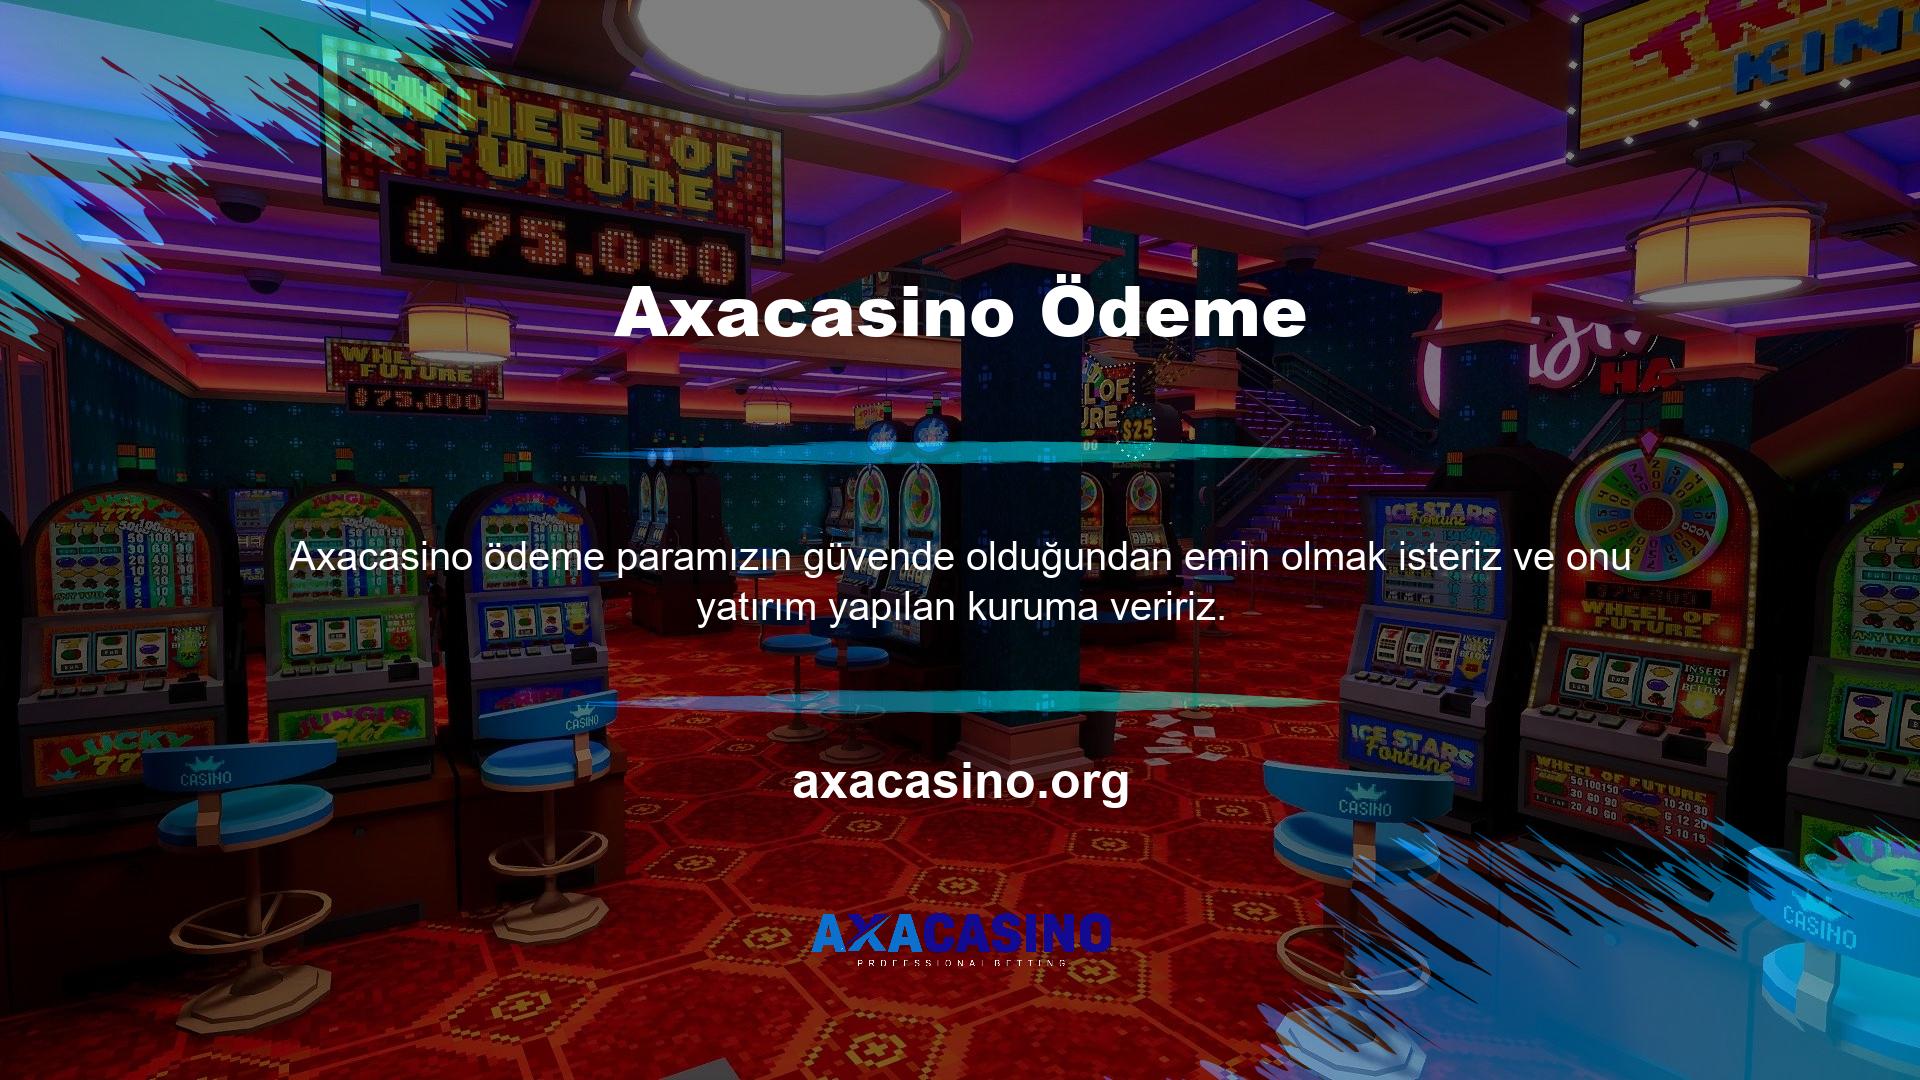 " Tüm bu gereksinimleri karşılayan çevrimiçi oyun platformu Axacasino, Kullanıcılarımız için ödemeyi kolaylaştırmak için her türlü çabayı göstermektedir